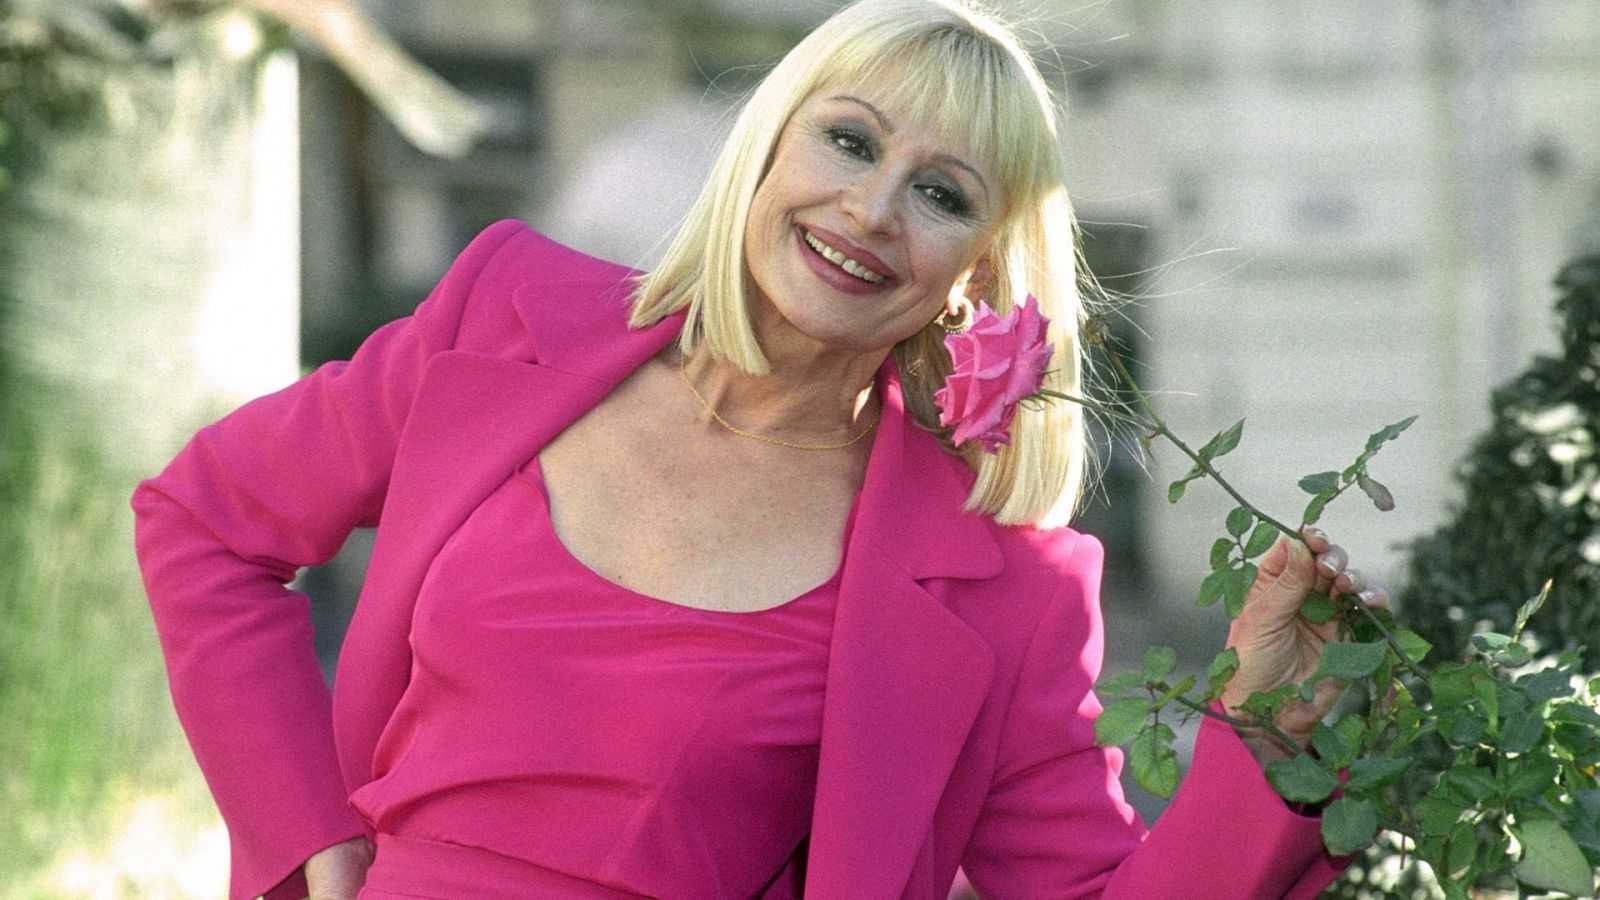 Raffaella Carrà oliendo una flor vestida con un traje rosa fucsia